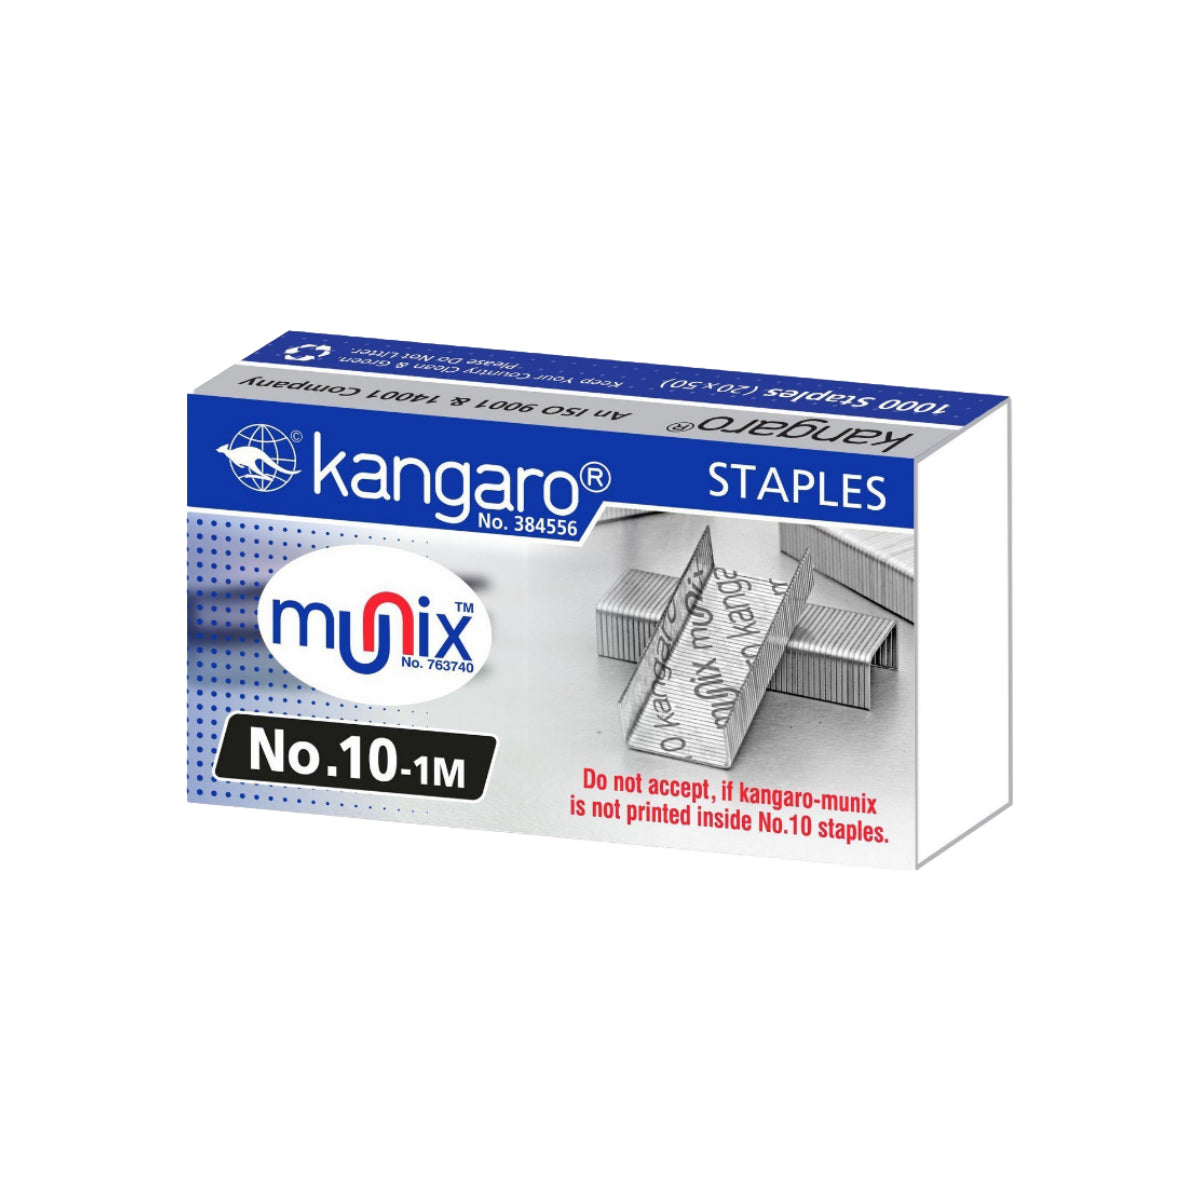 Kangaro Staples No.10-1M